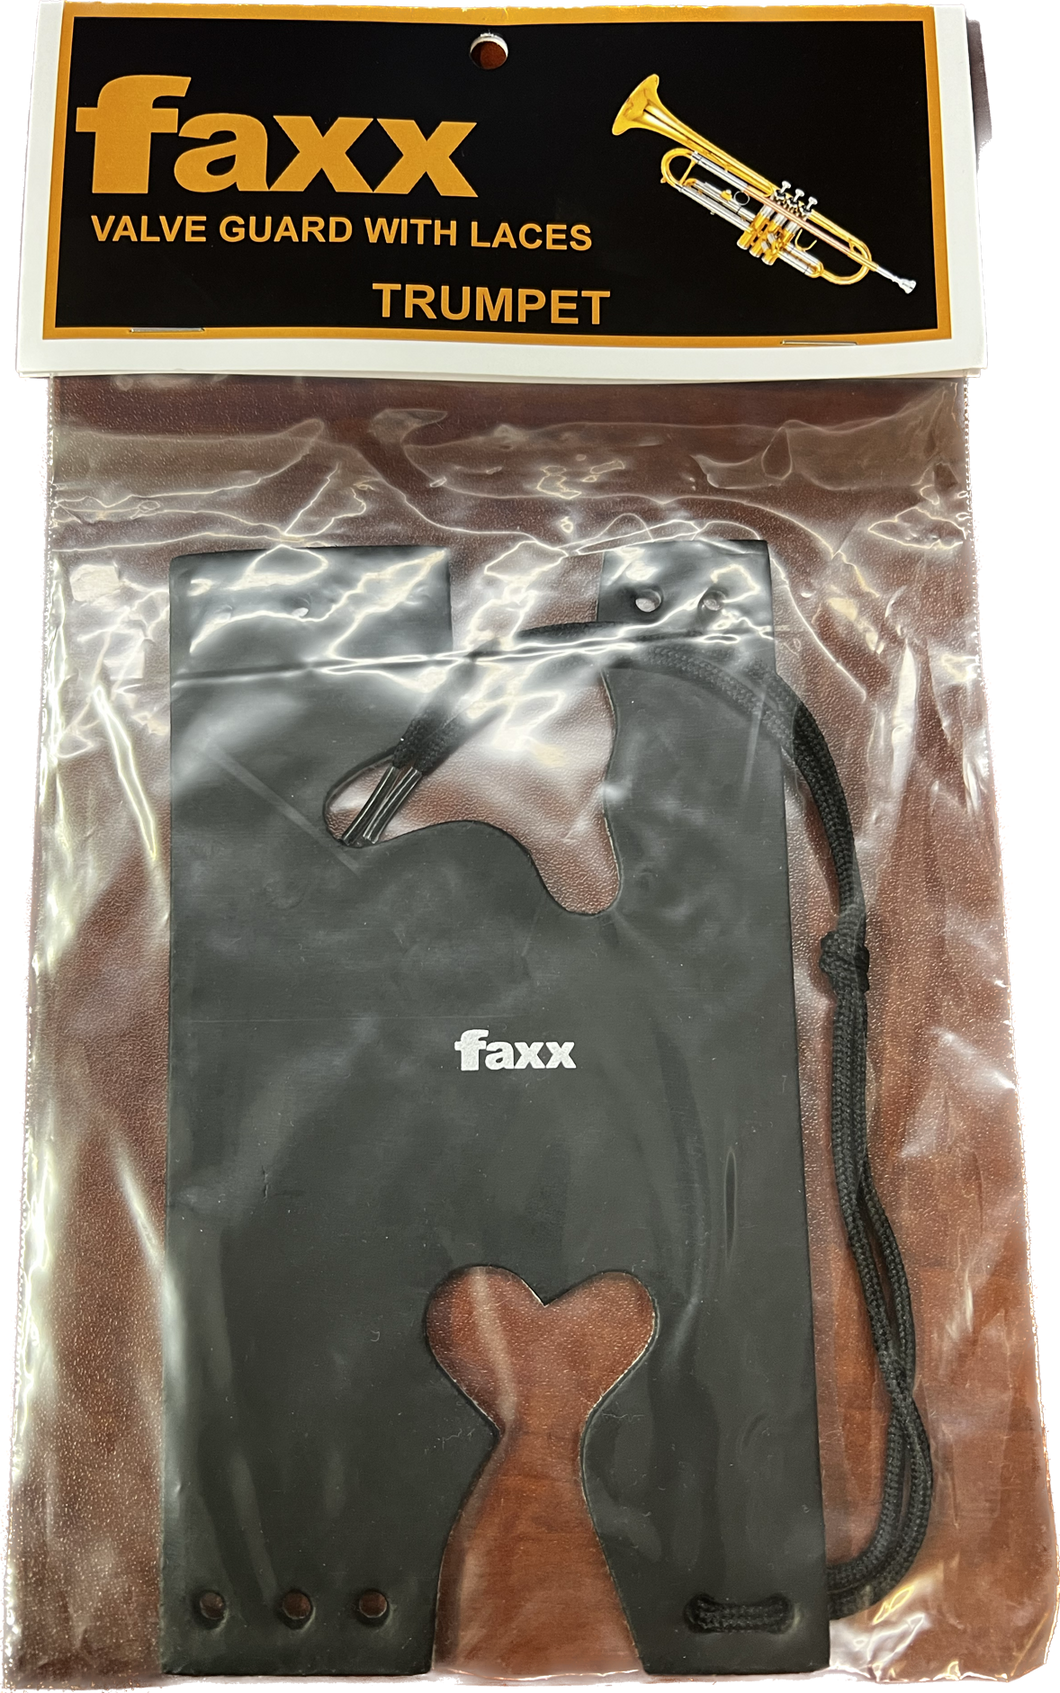 Faxx Trumpet / Cornet Valve Guard, Black Leather with Laces FTVG-2